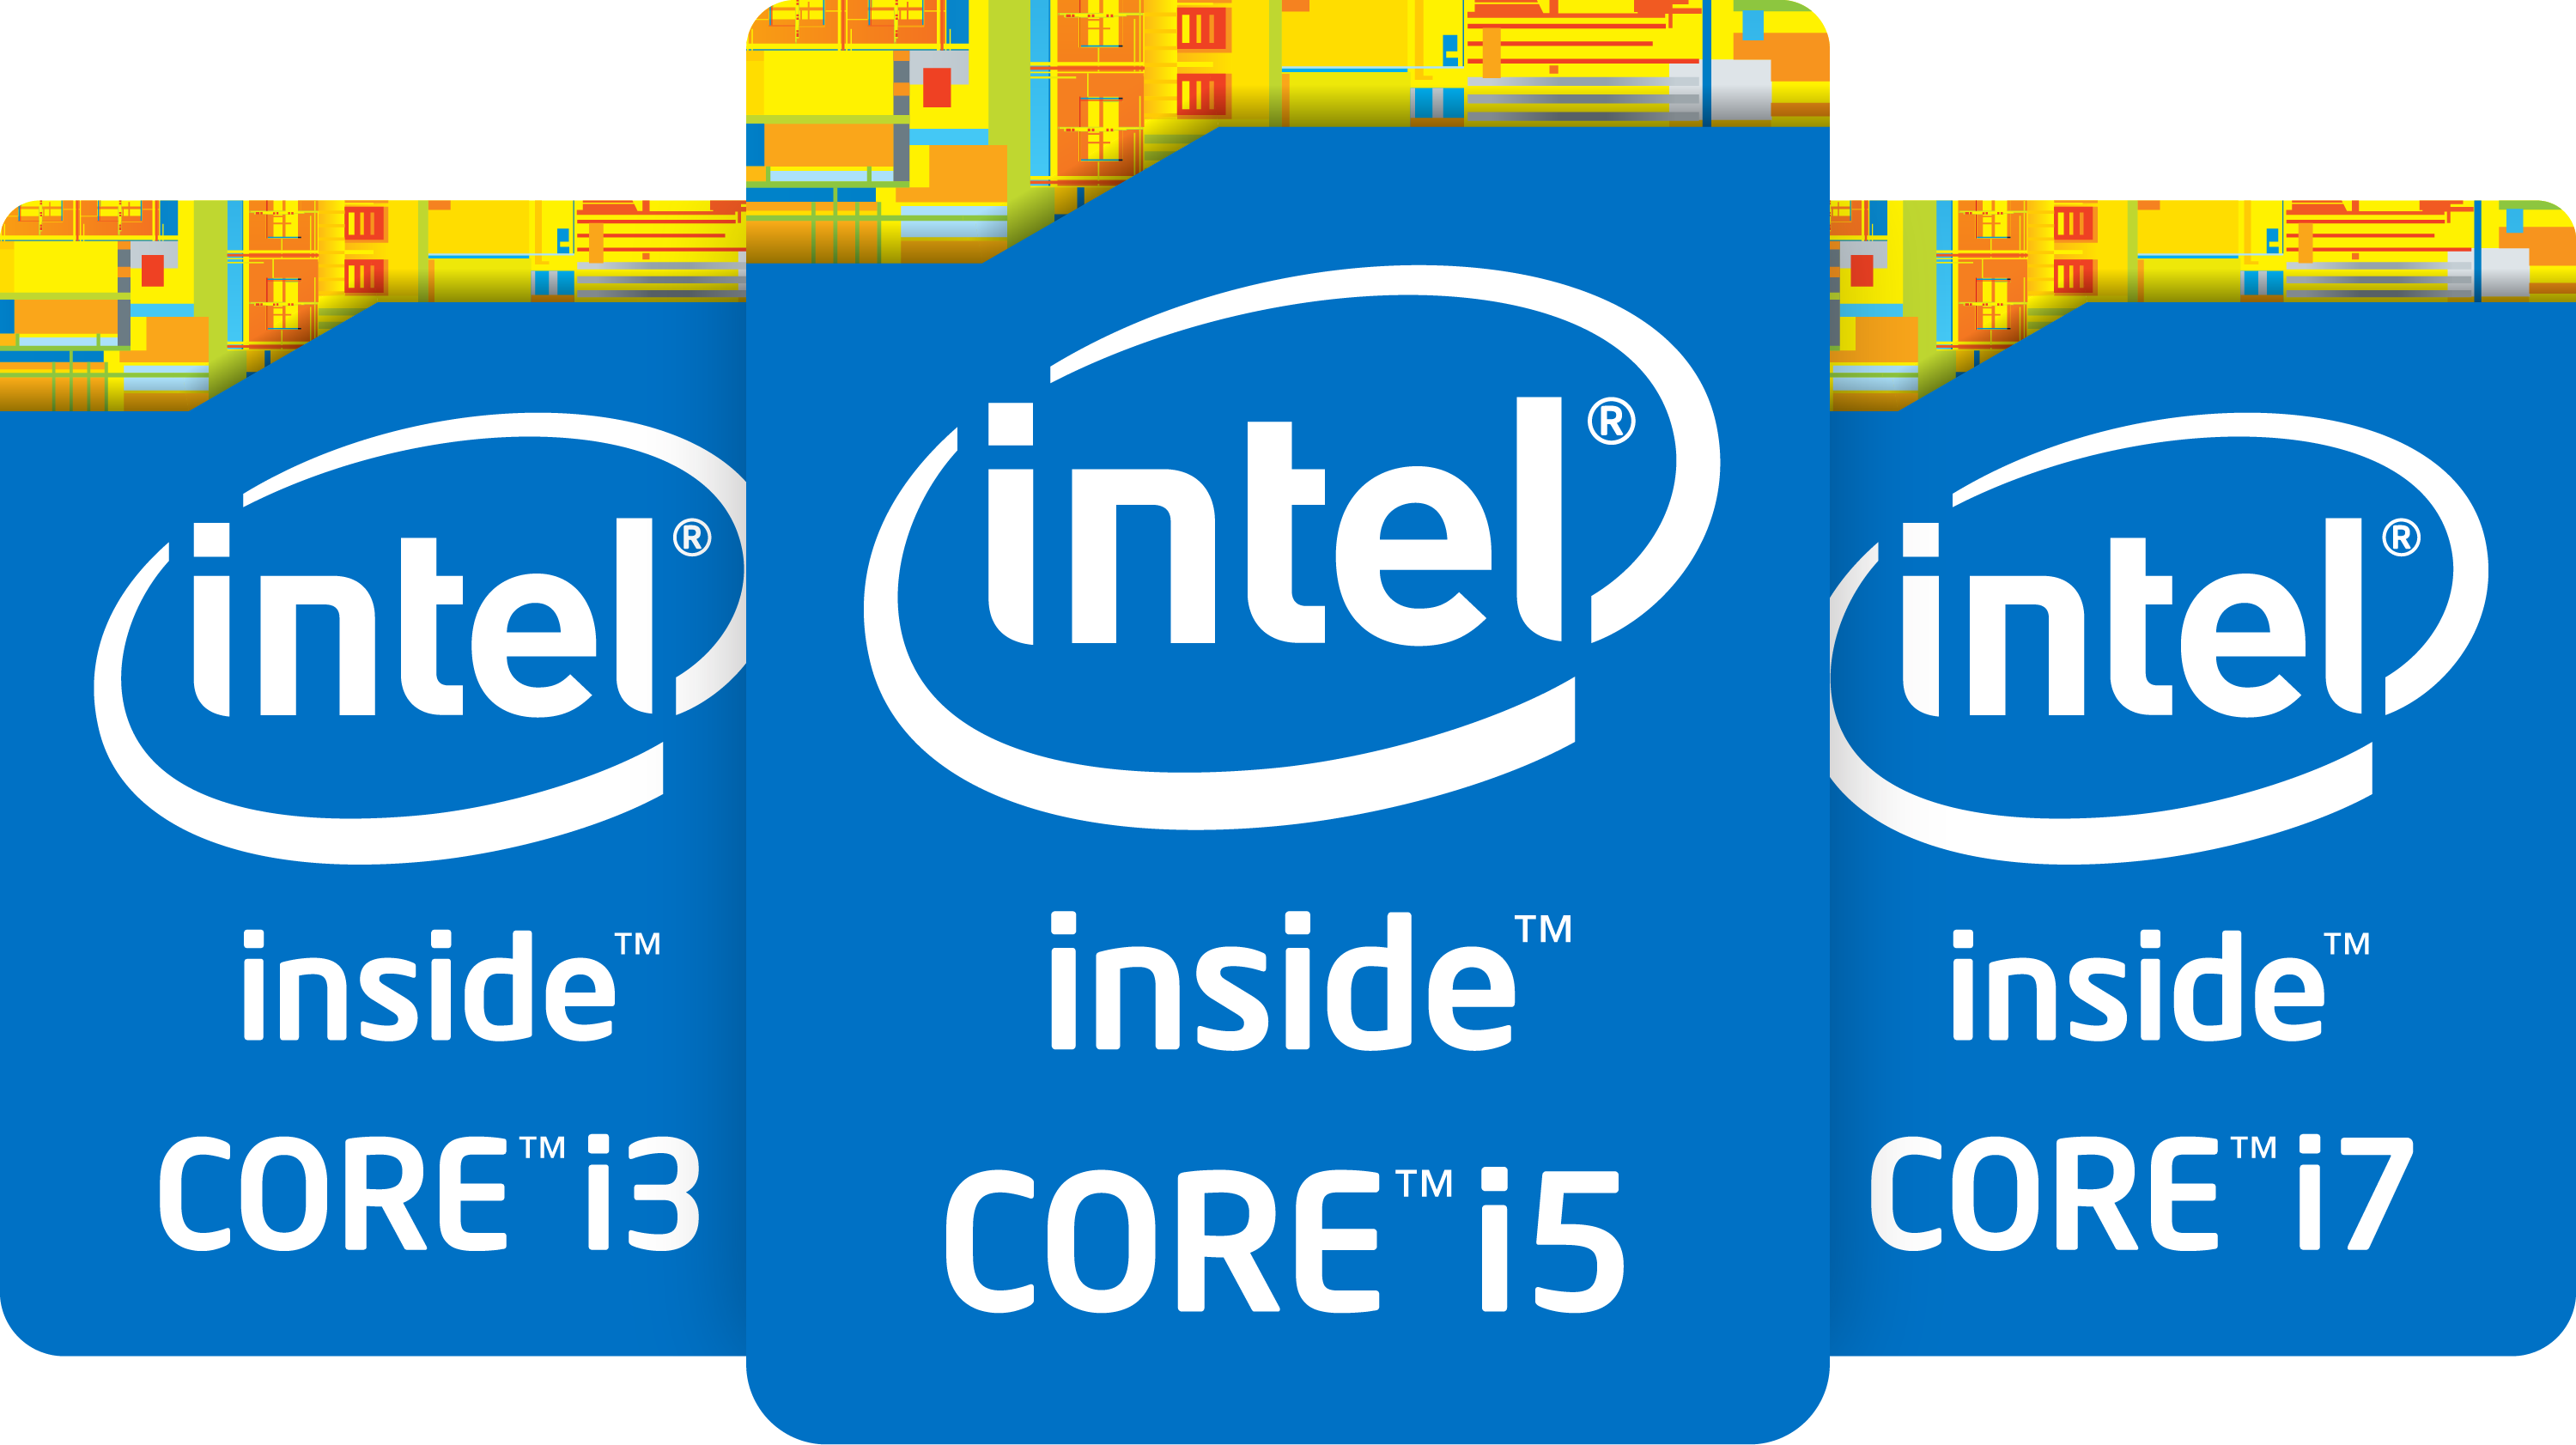 Интел кс. Процессор Intel Core i7 logo. Intel Core i5 logo. Наклейка Intel Core i7. Intel Core i7 inside.